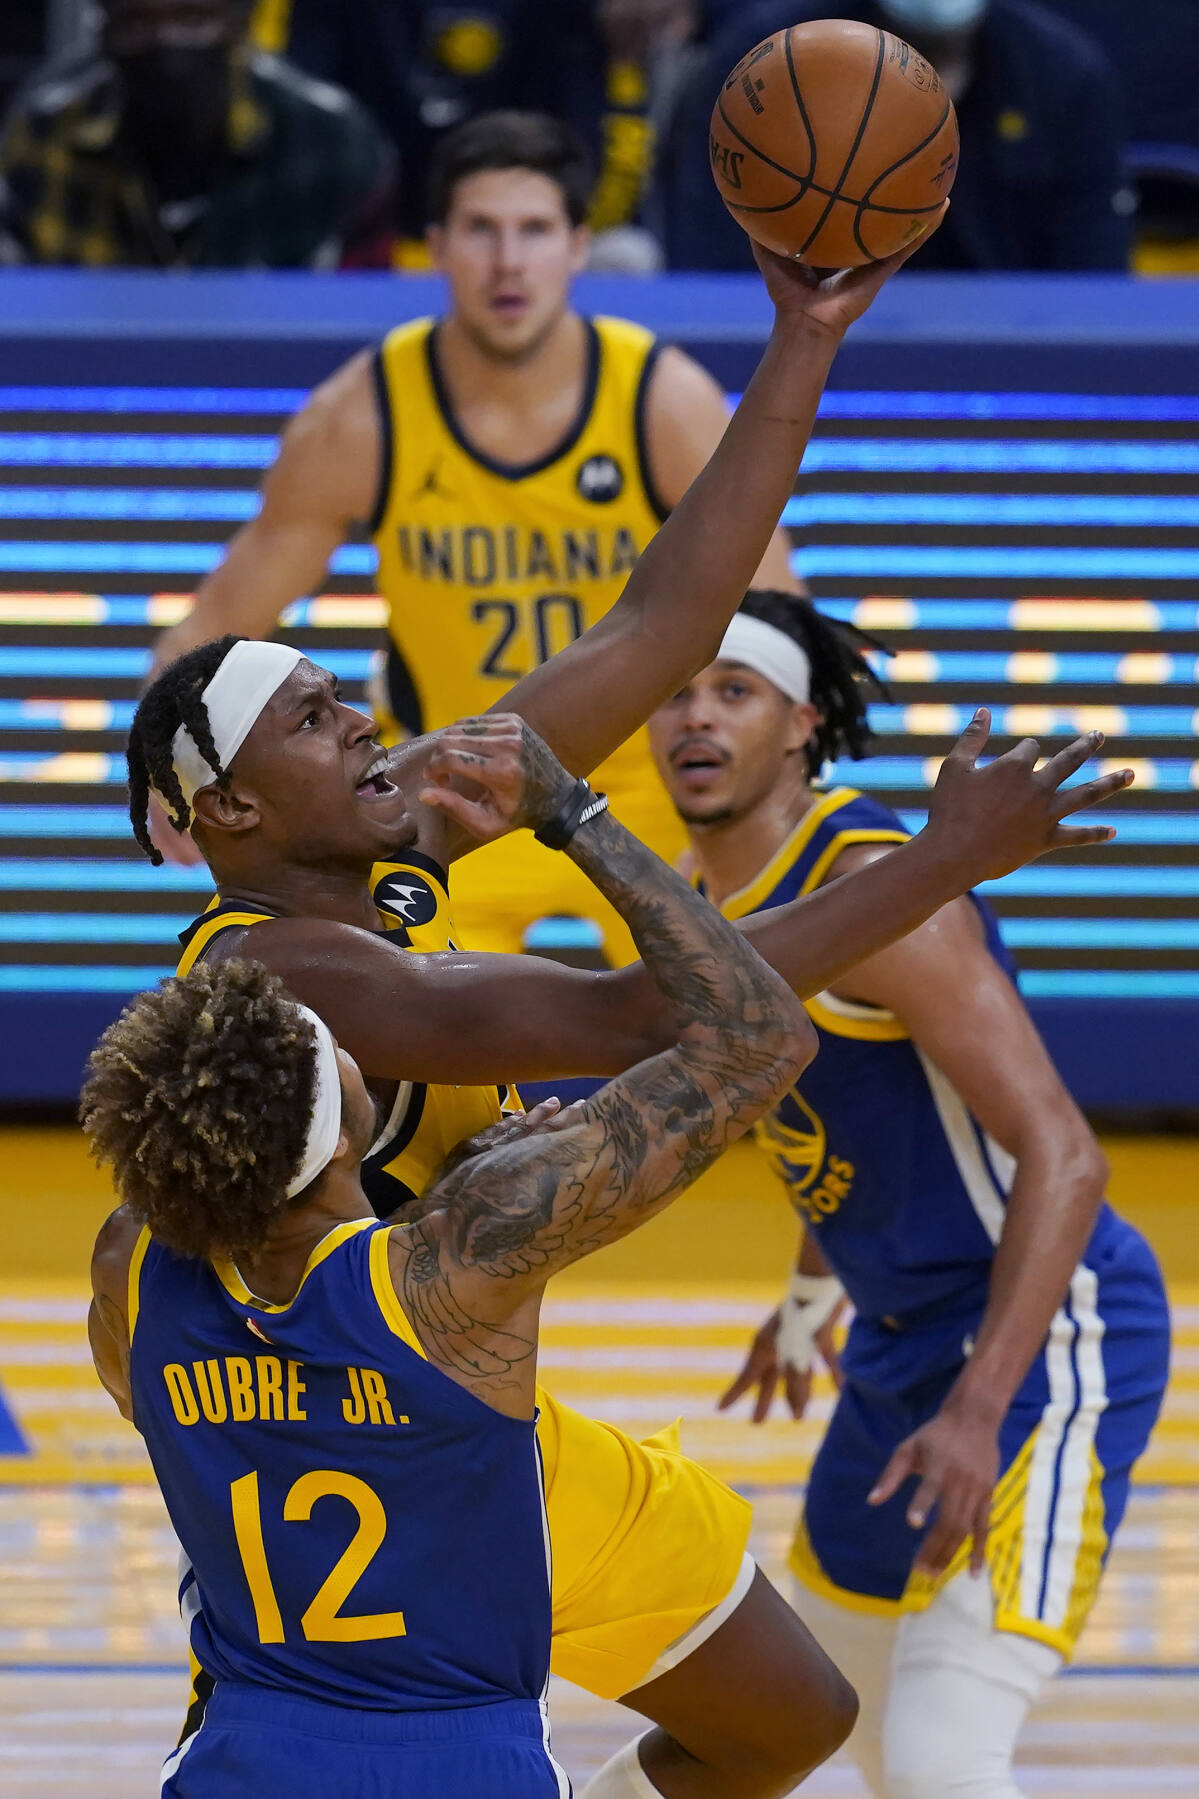 Curry sai lesionado, e Warriors perdem para os Pacers, nba